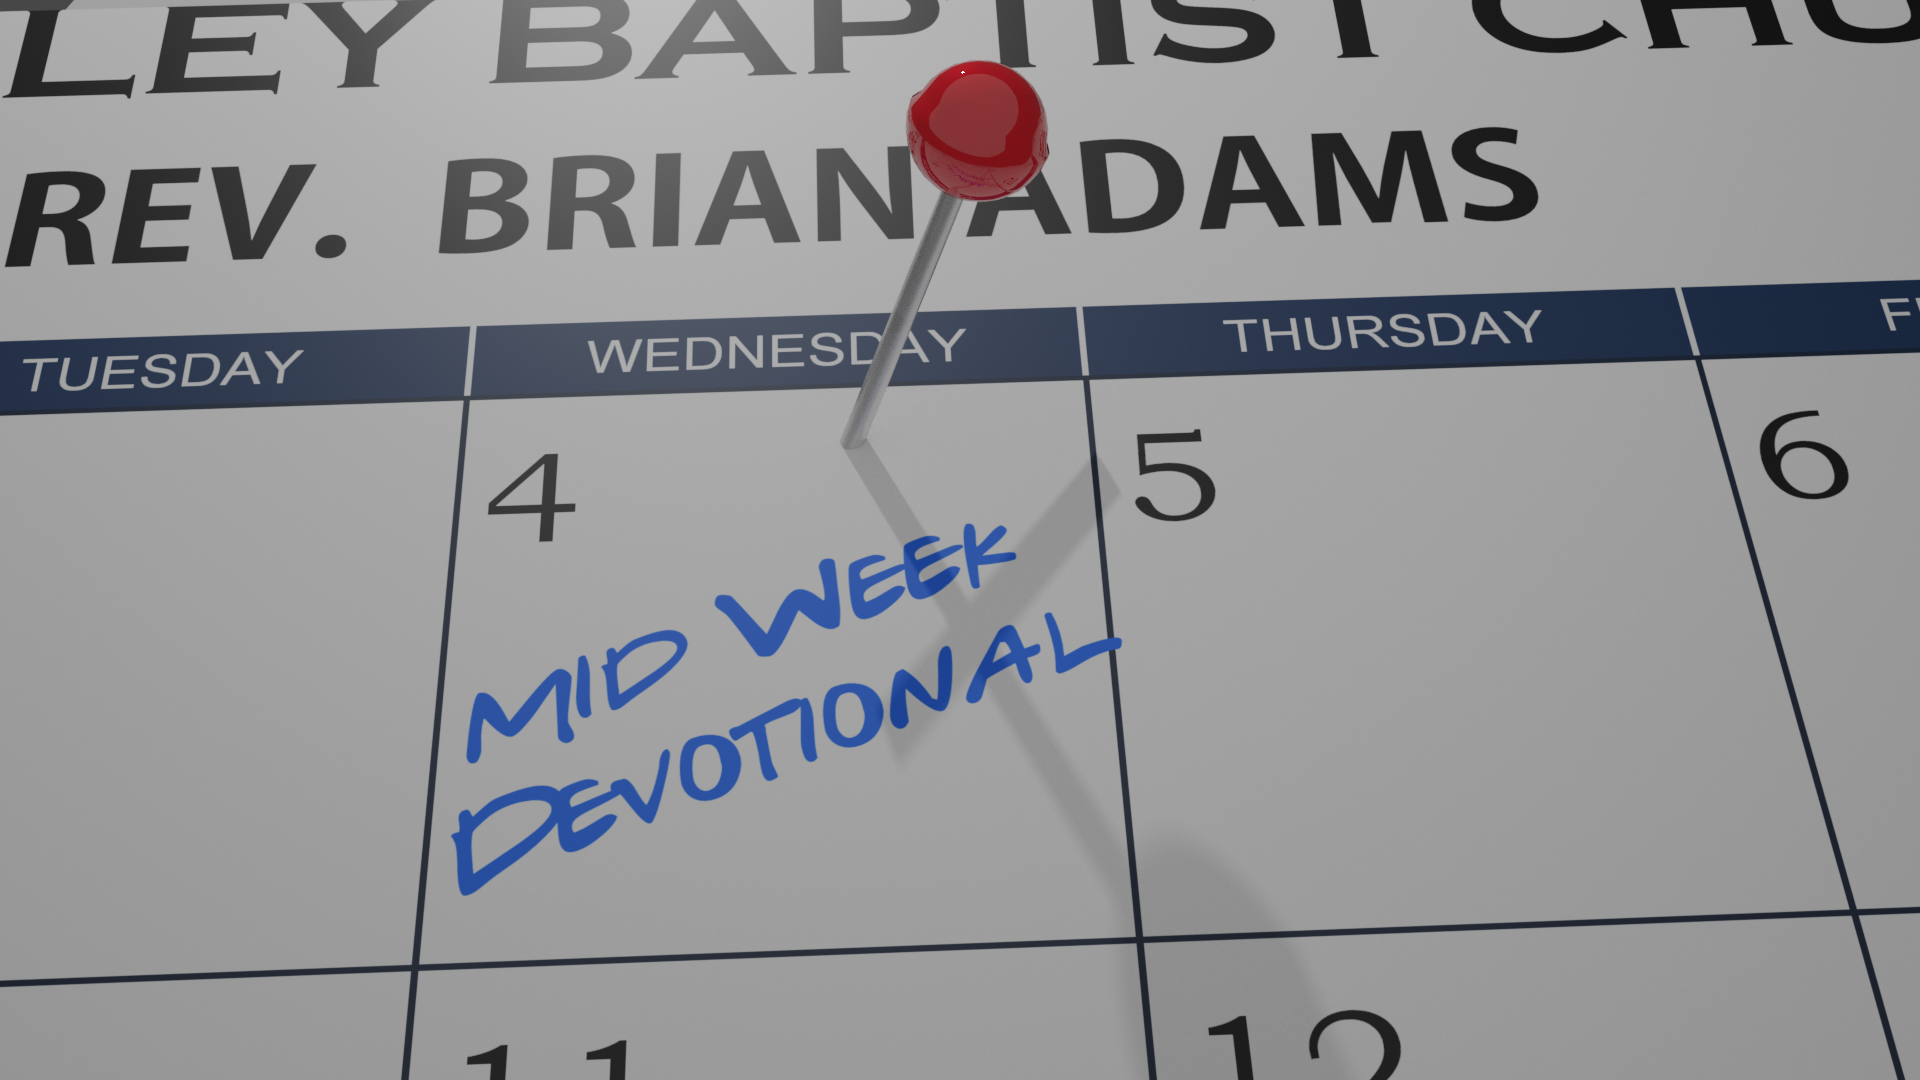 Mid-Week Devotional 12/23/20